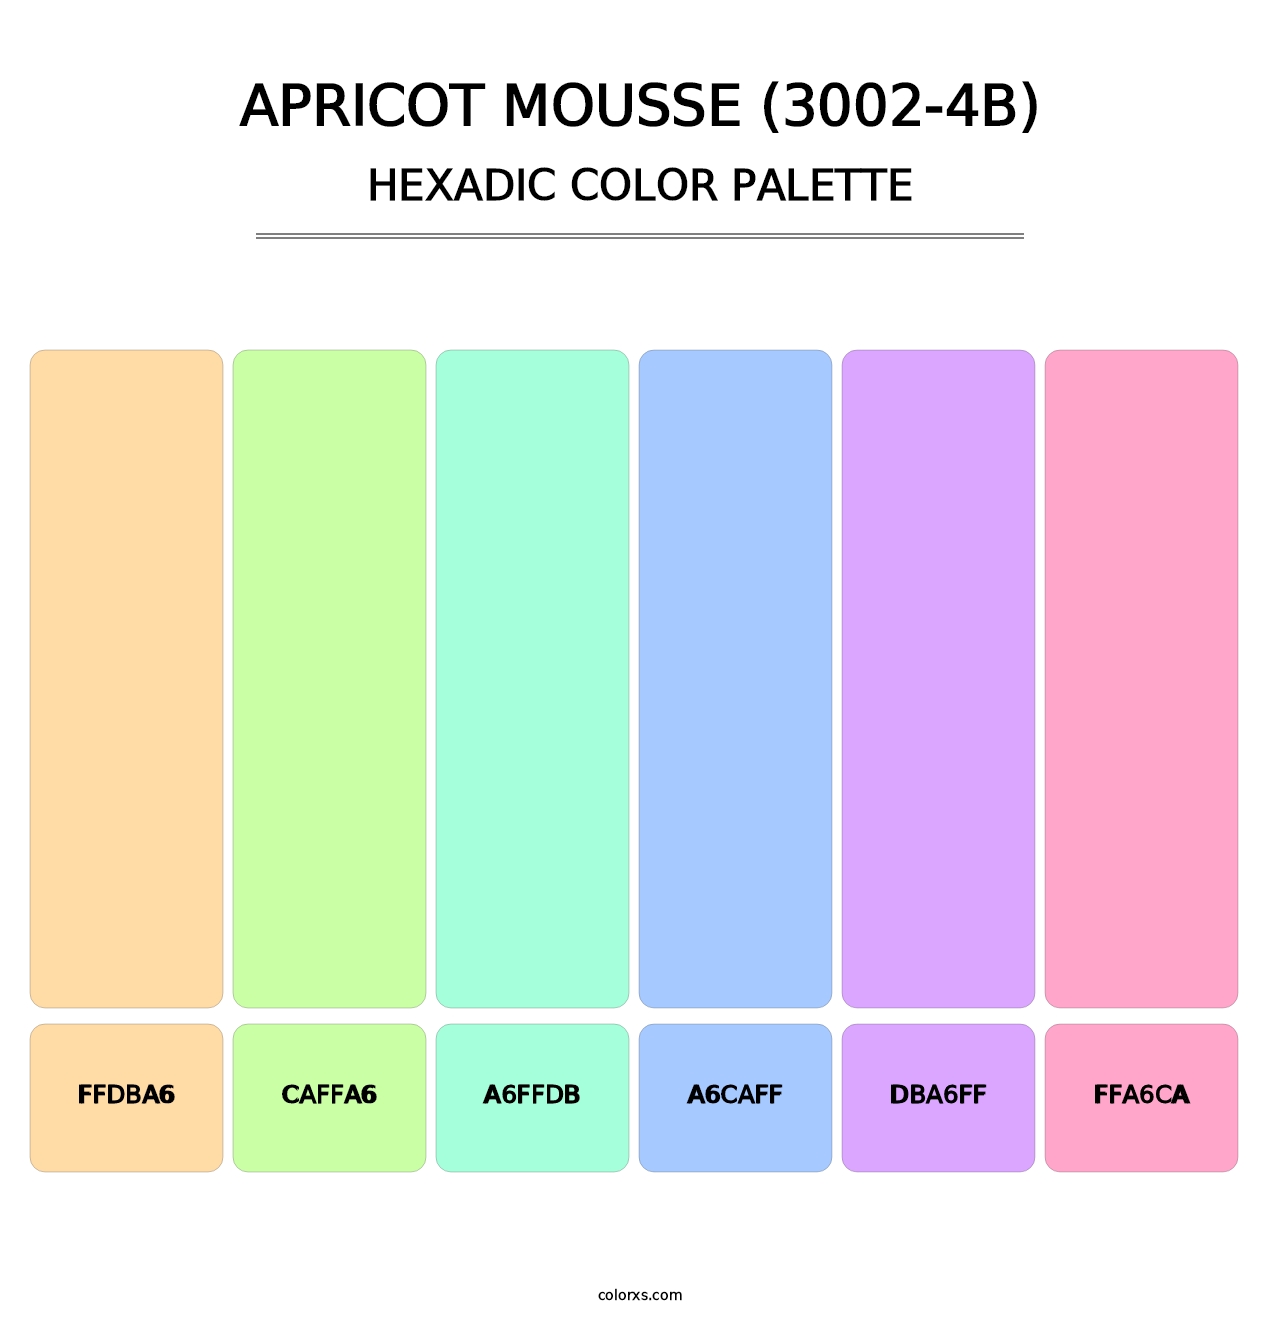 Apricot Mousse (3002-4B) - Hexadic Color Palette